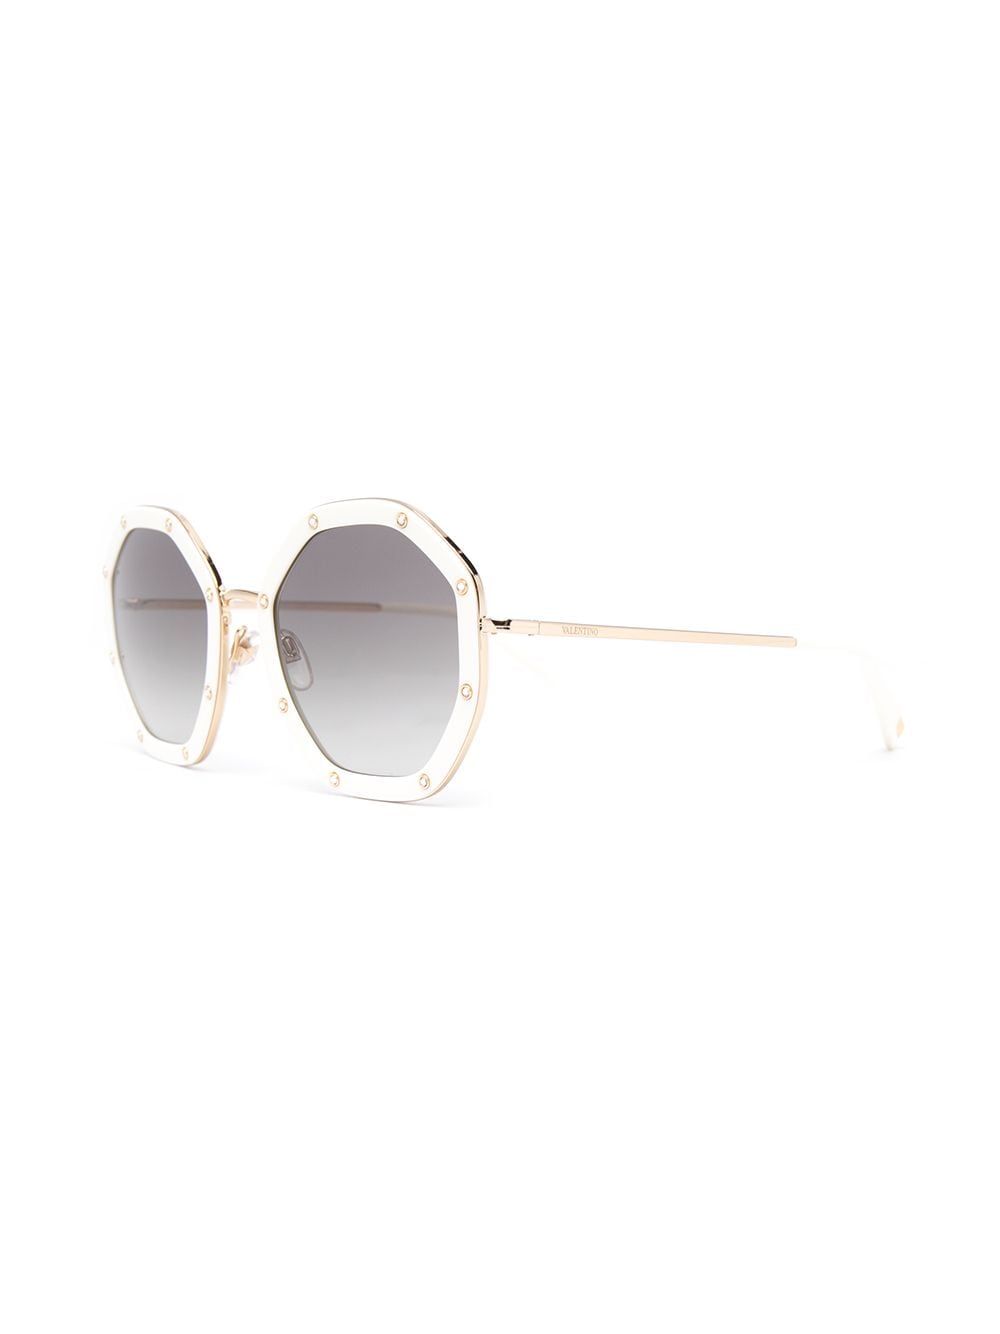 фото Valentino eyewear солнцезащитные очки в восьмиугольной оправе со стразами